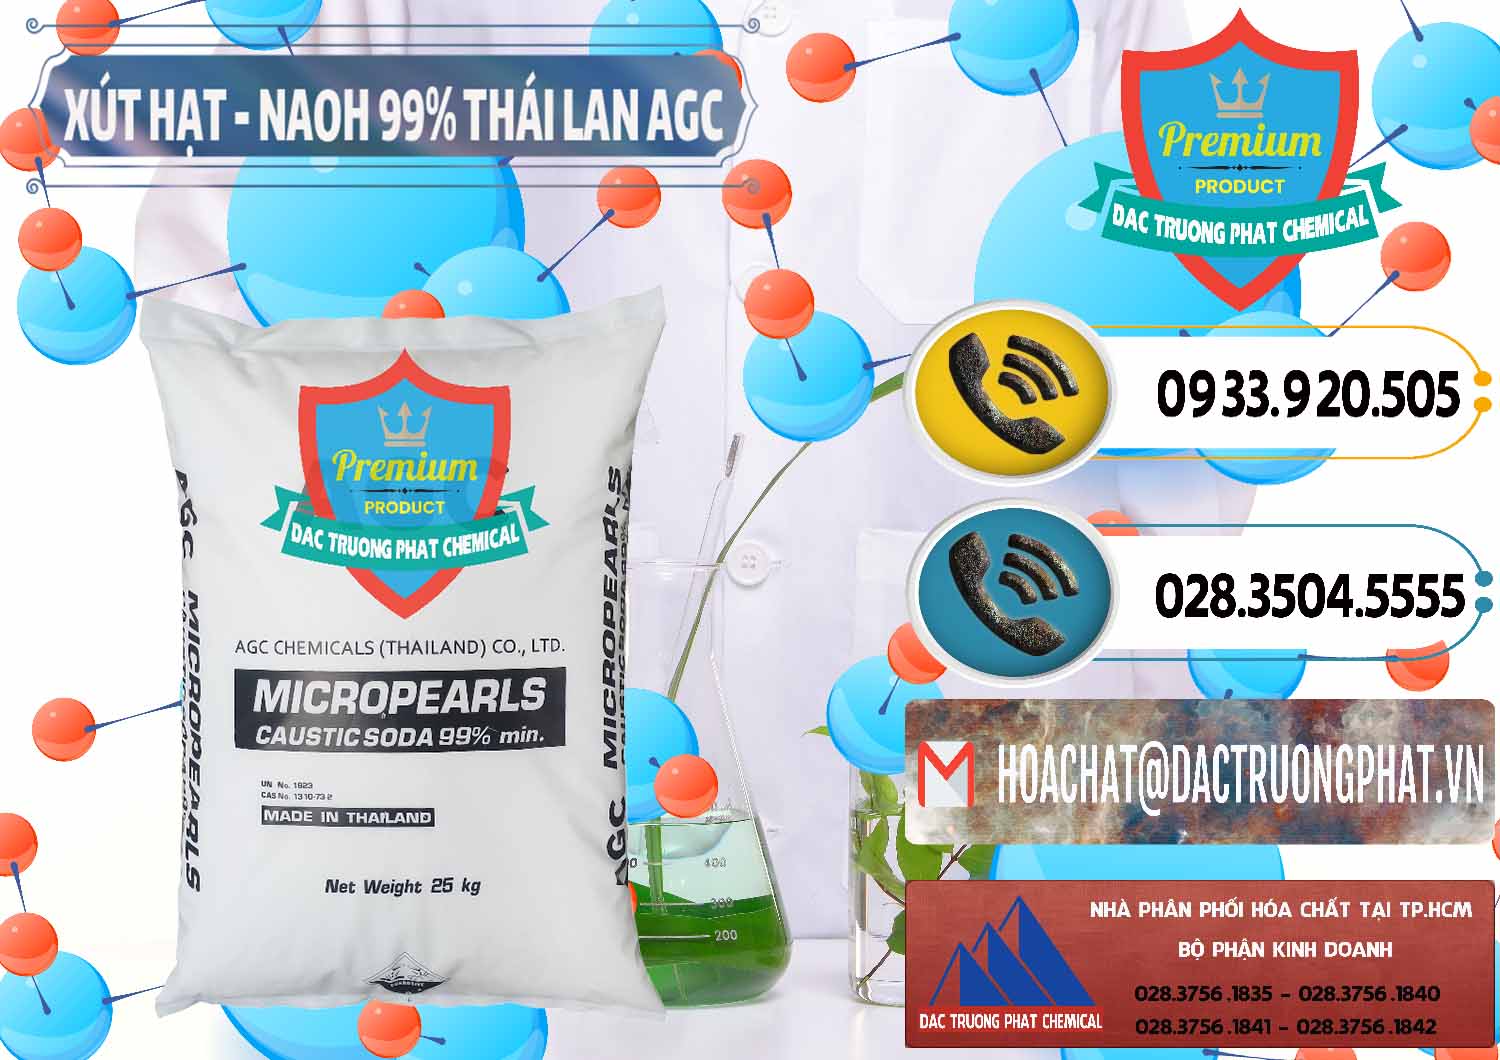 Nơi chuyên bán _ phân phối Xút Hạt - NaOH Bột 99% AGC Thái Lan - 0168 - Nhà cung cấp - bán hóa chất tại TP.HCM - hoachatdetnhuom.vn